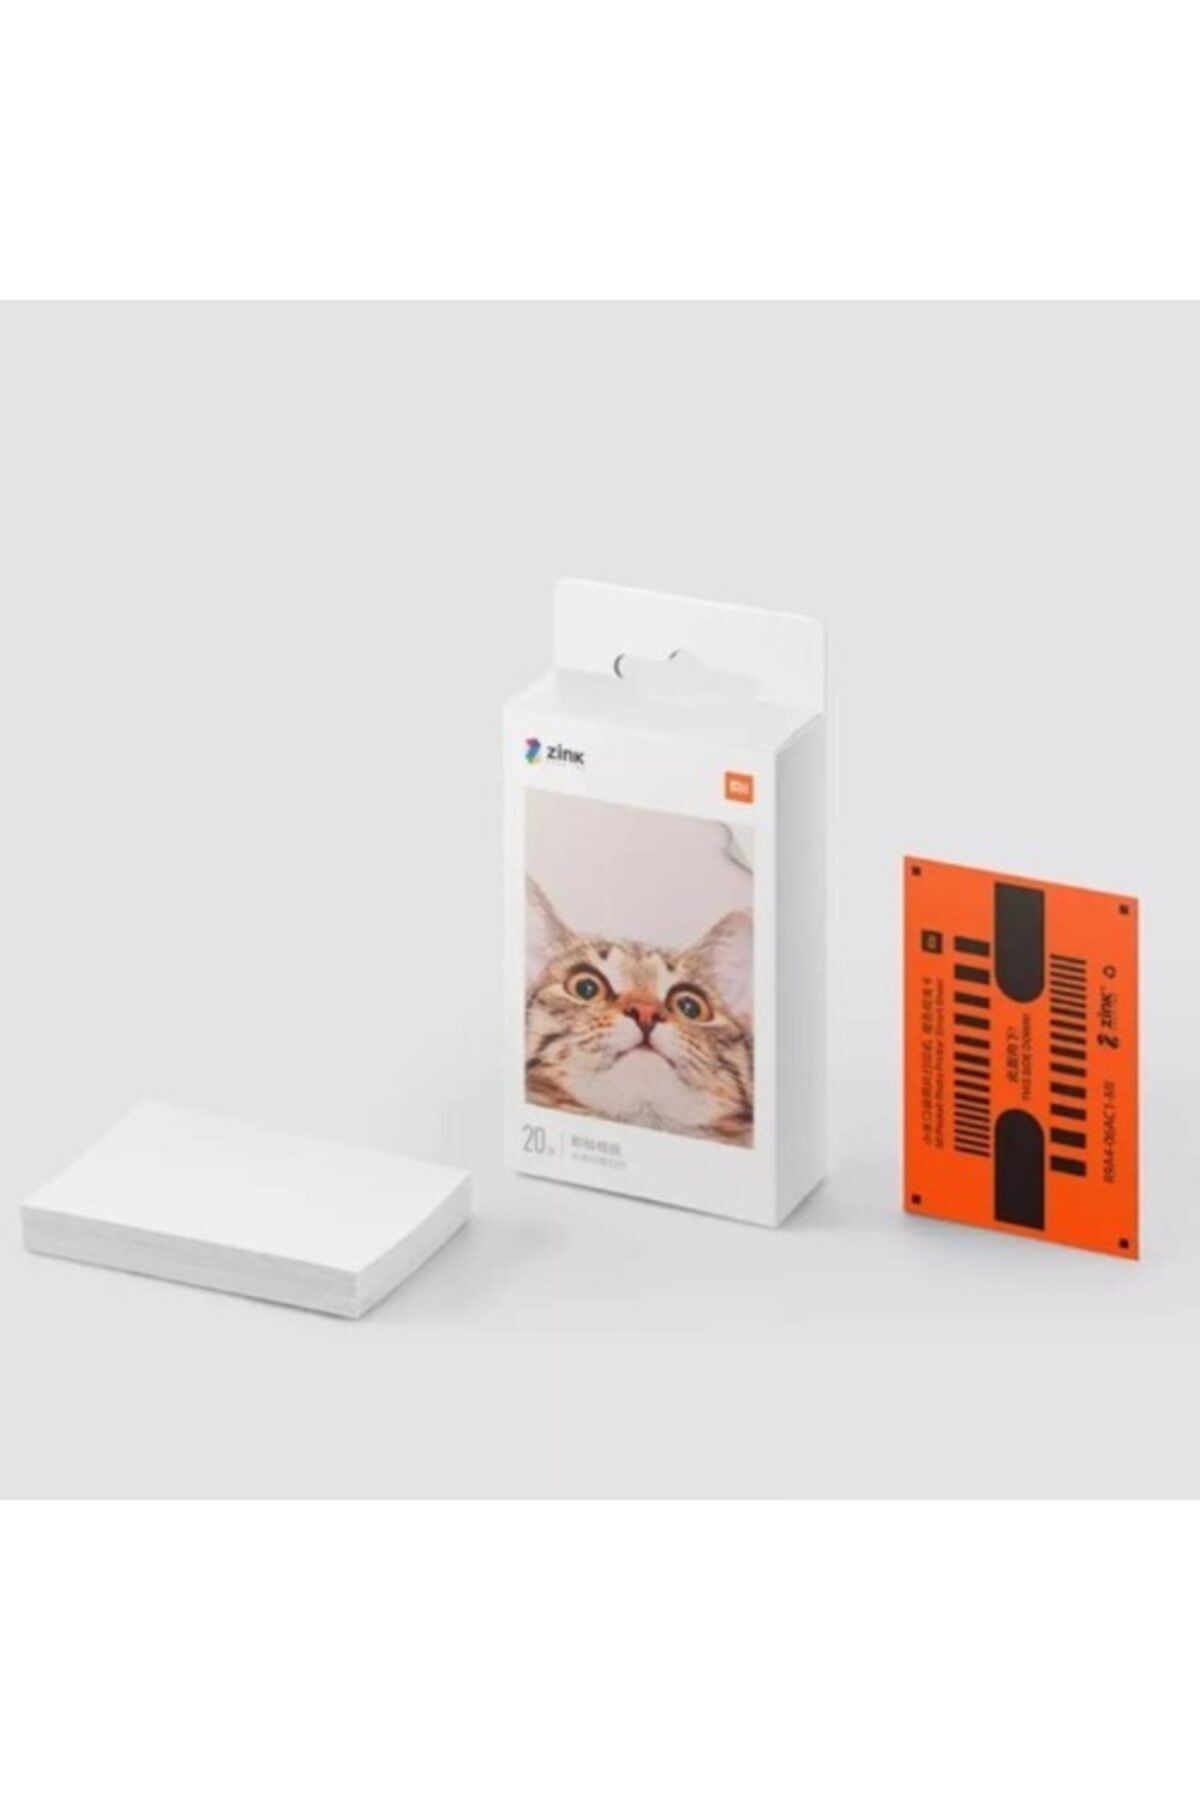 Xiaomi Mi Portable Photo Printer 2x3" Yedek Kağıt 20 Adet